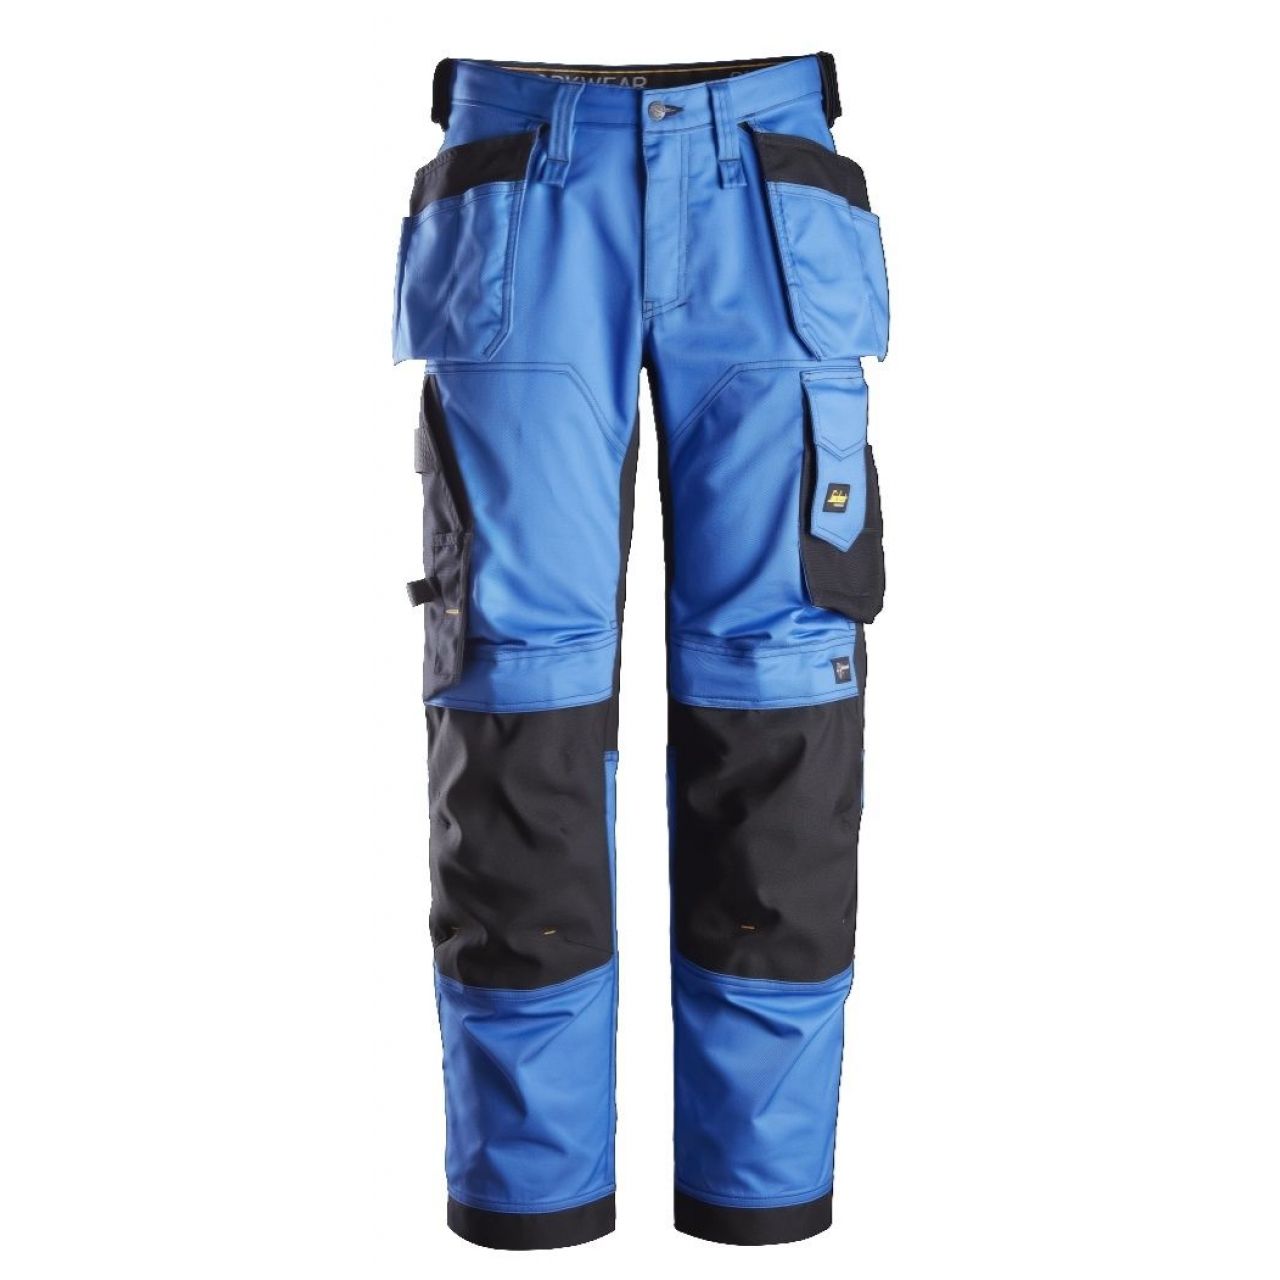 Pantalon elastico ajuste holgado AllroundWork bolsillos flotantes azul-negro talla 048